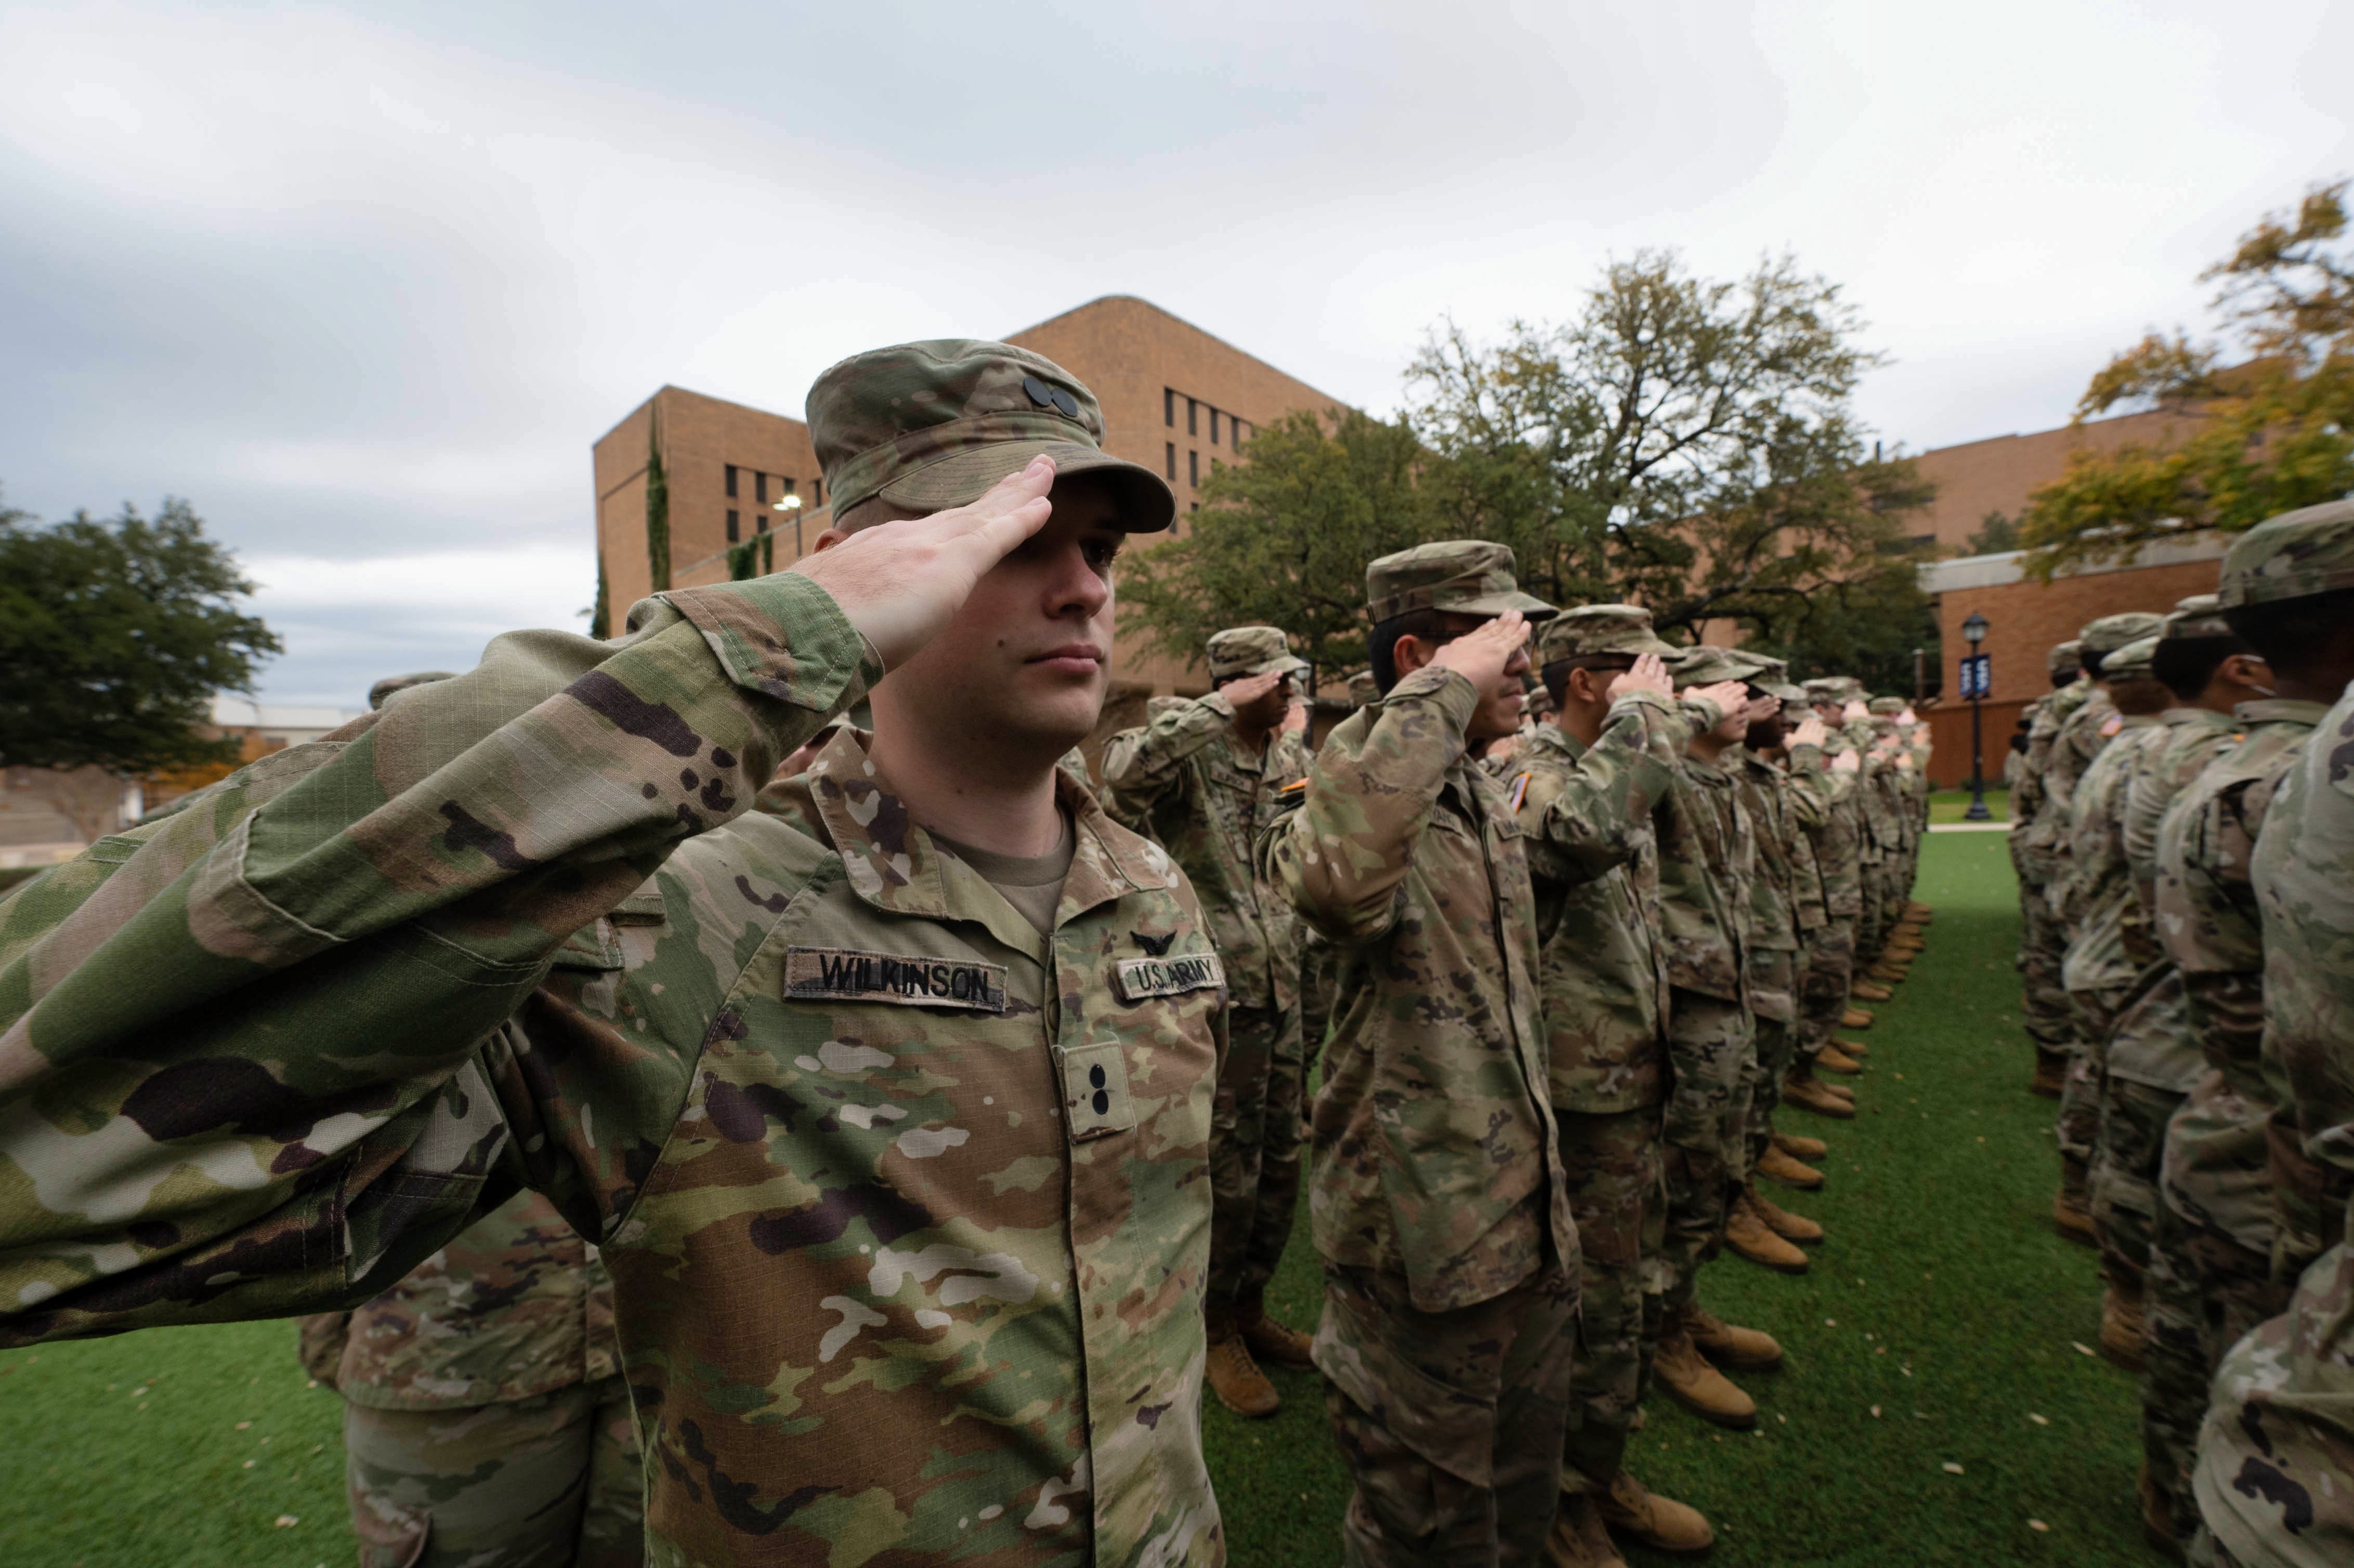 UTA military members saluting